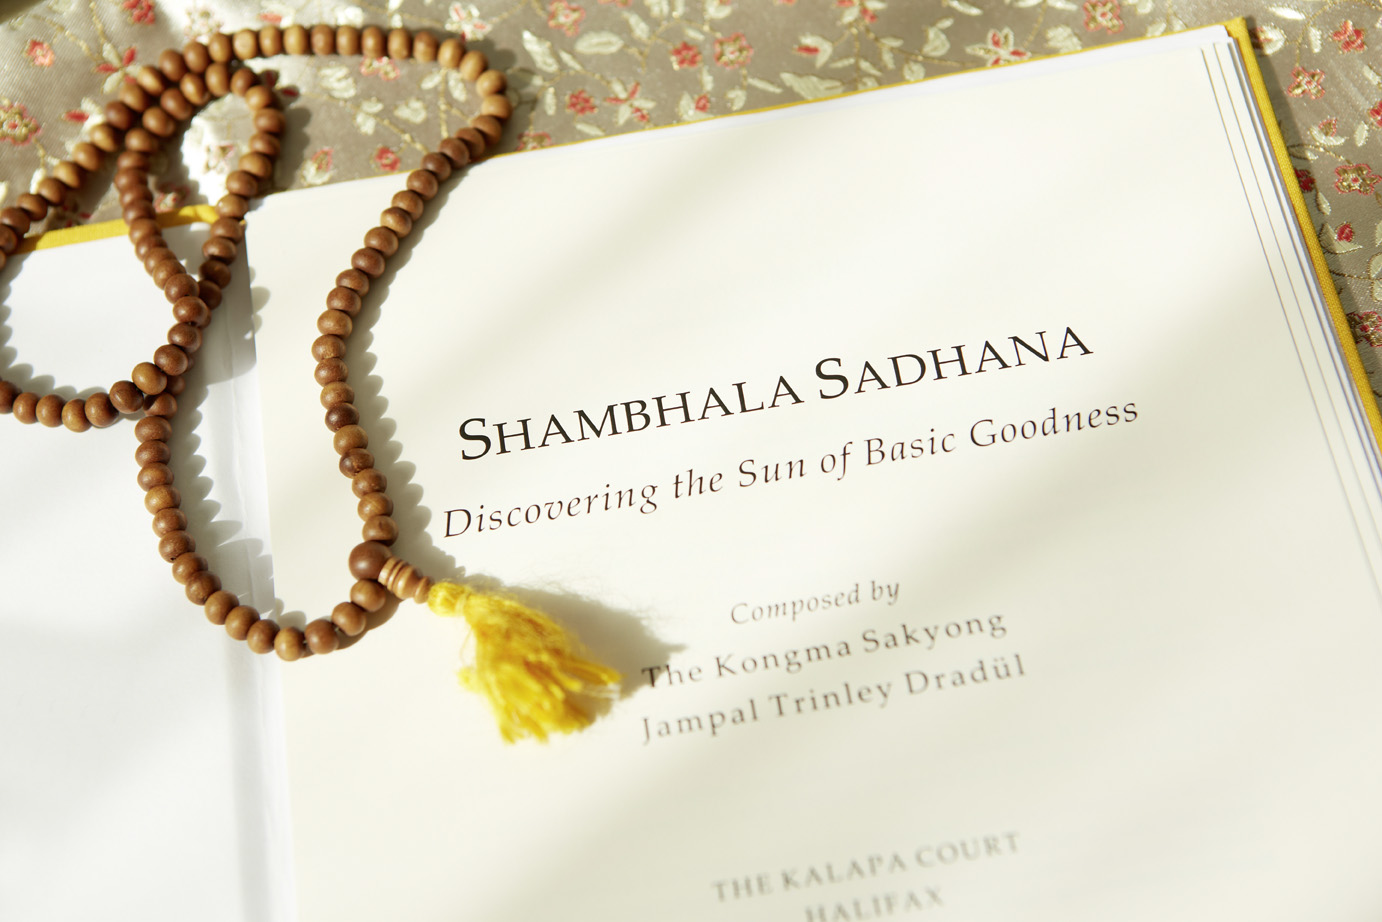 Shambhala Sadhana